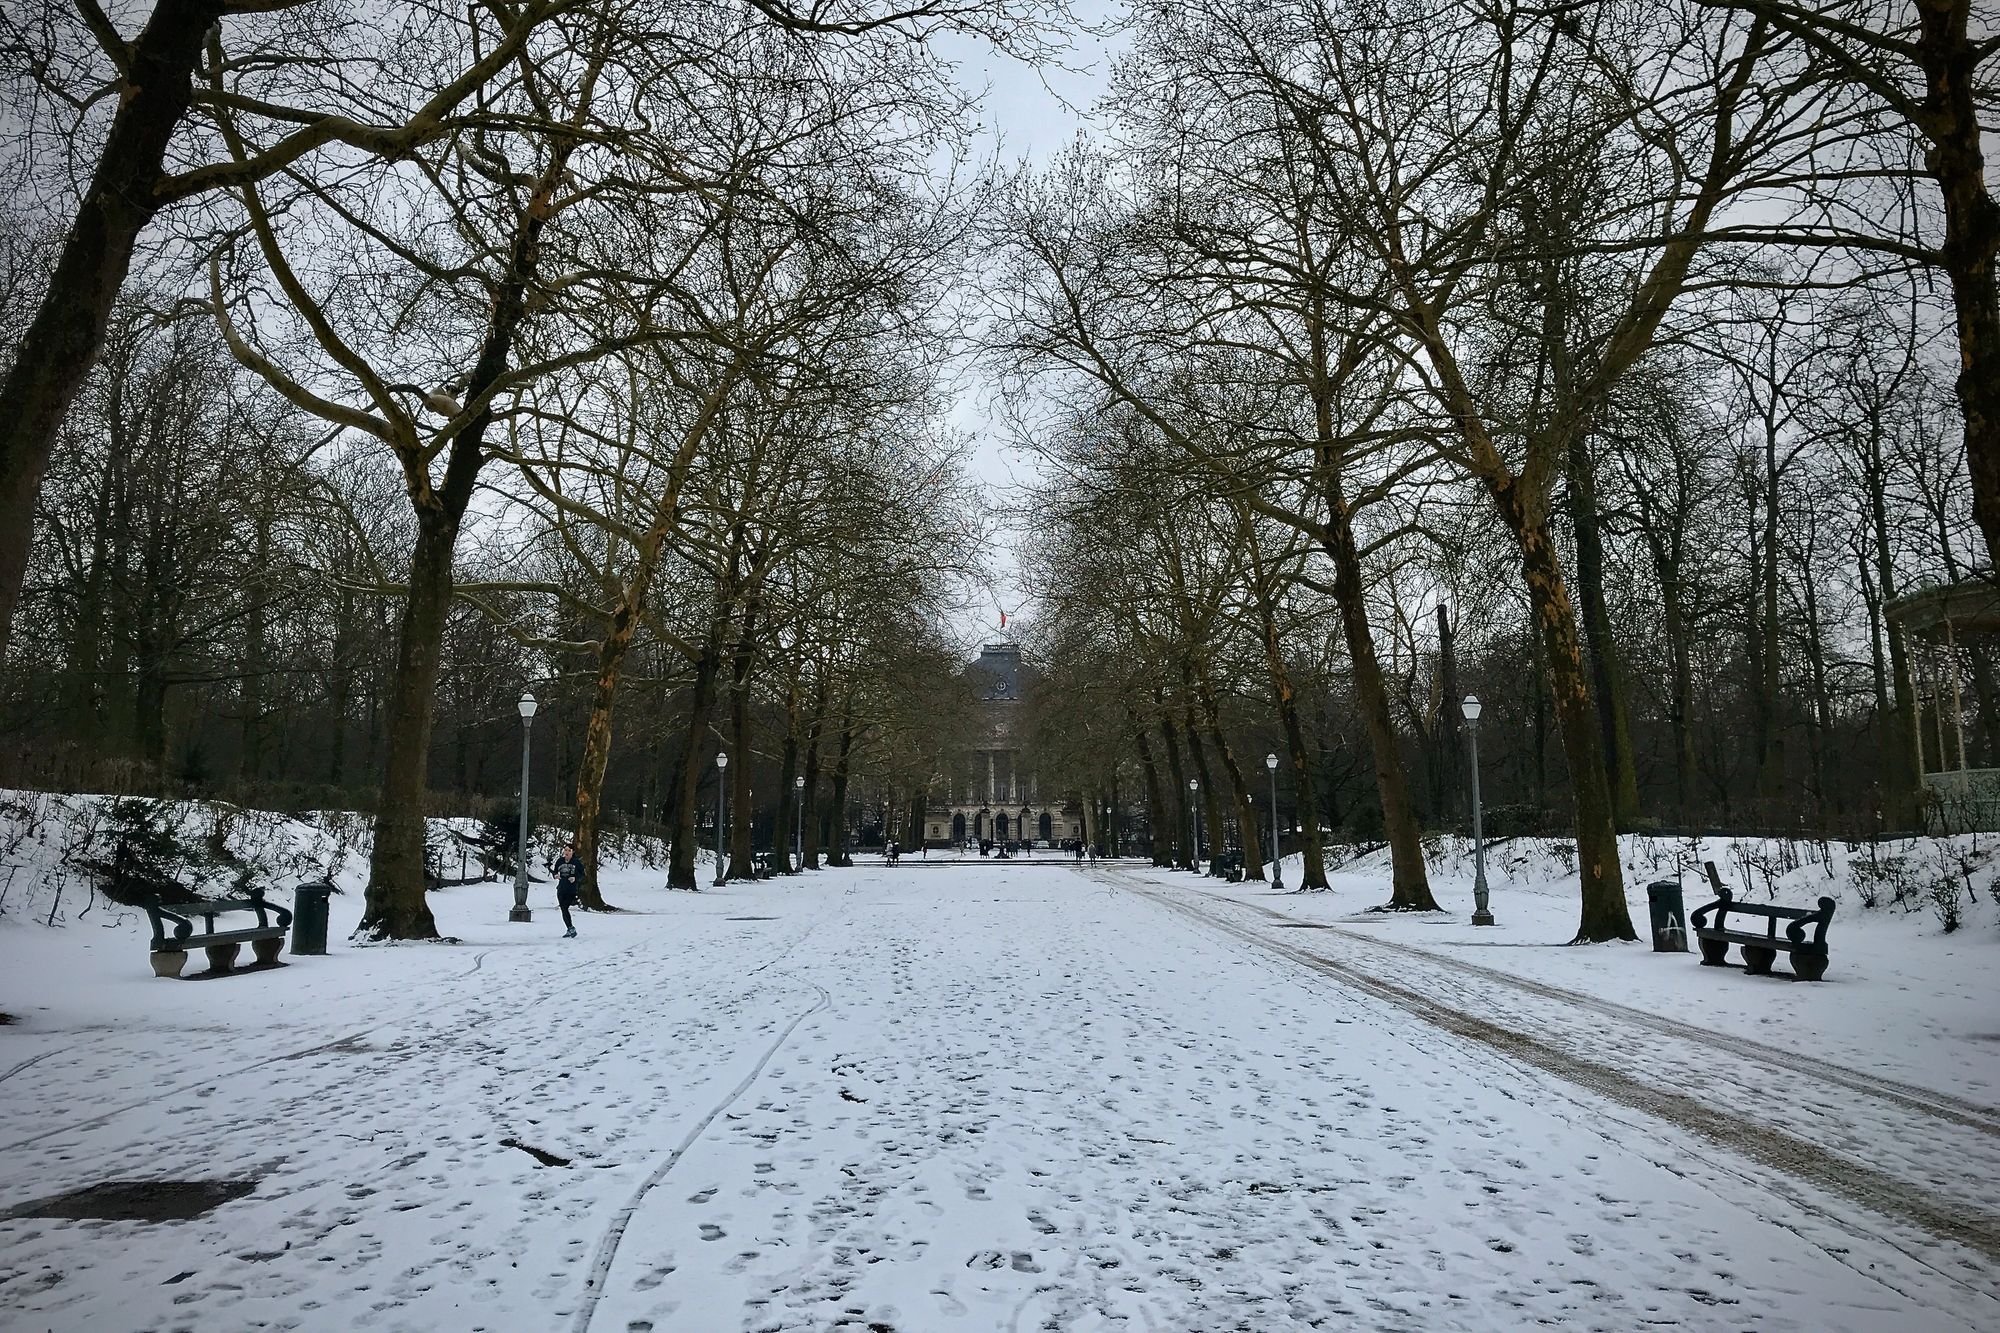 Snowy Brussels